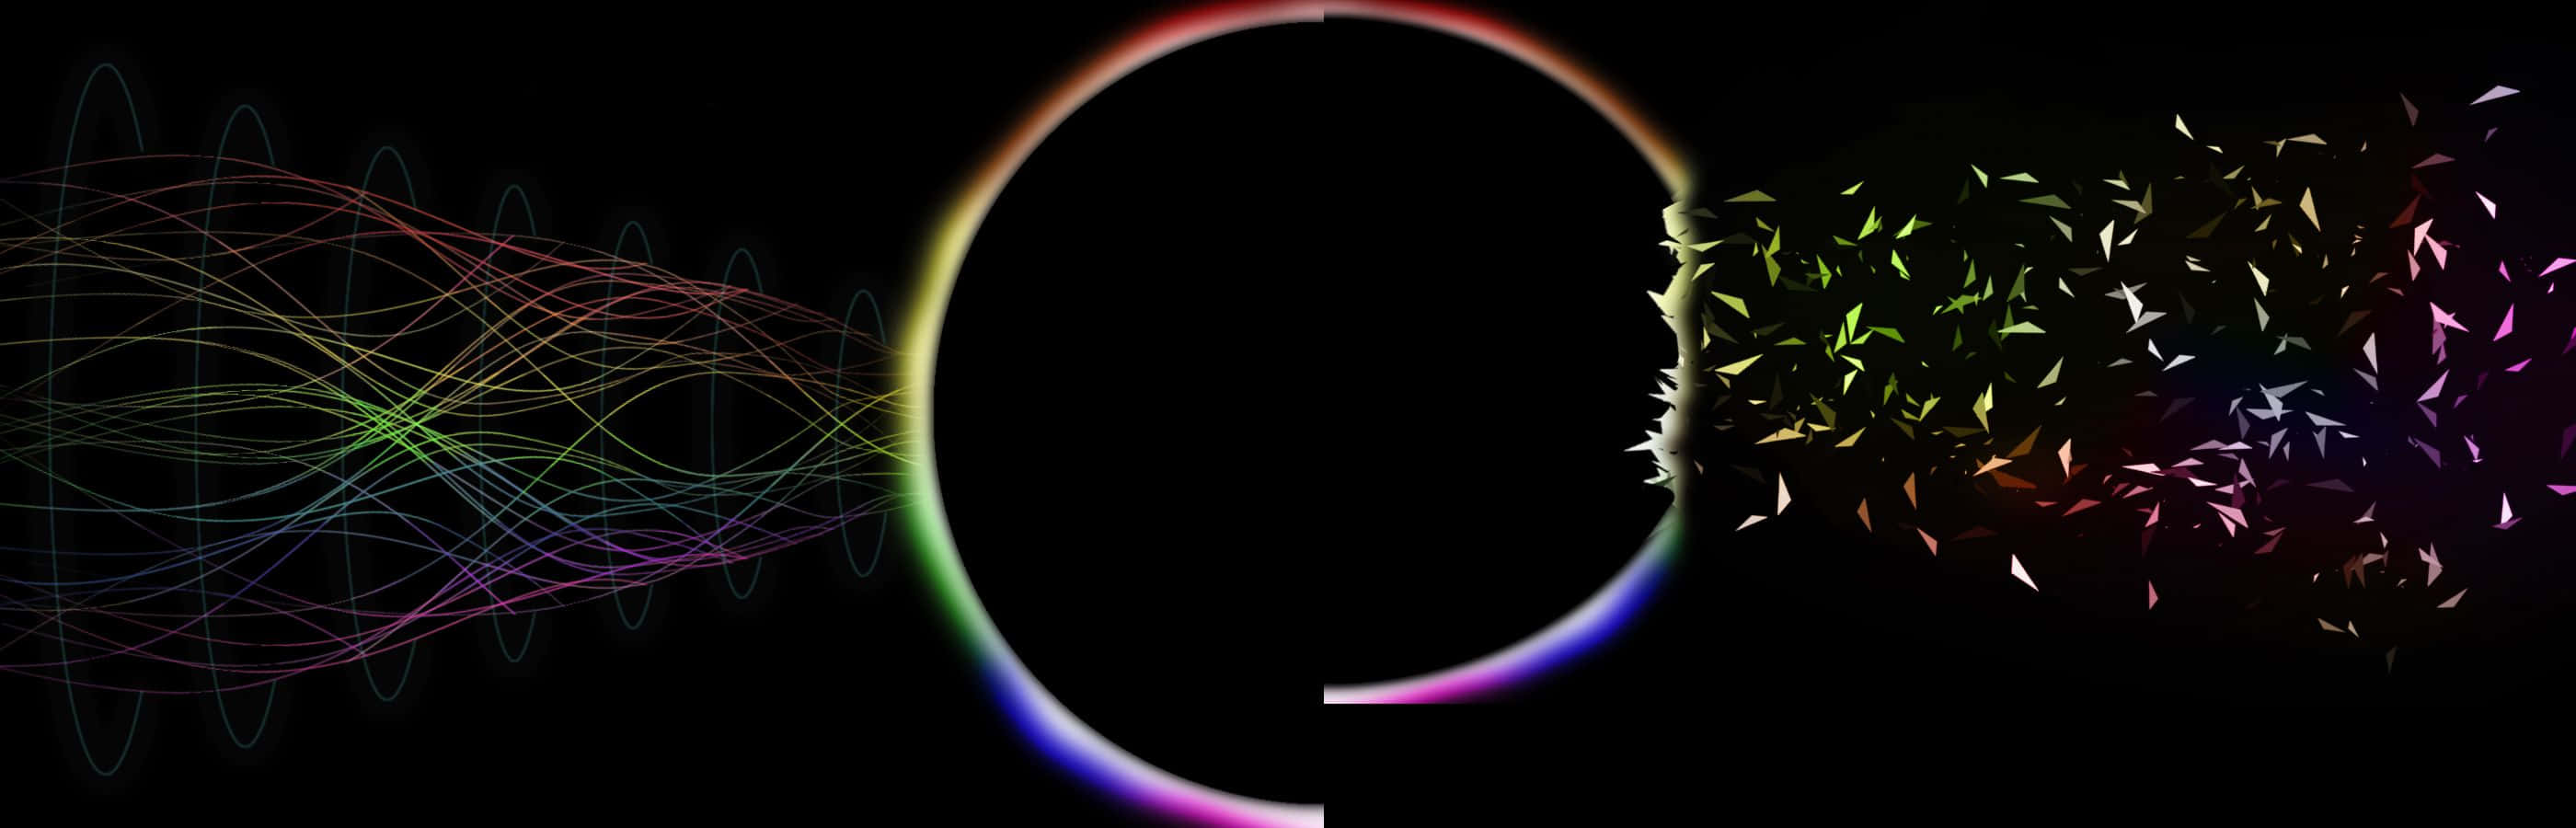 Einregenbogenfarbiges Licht Strahlt Aus Einer Kreisförmigen Form Heraus. Wallpaper